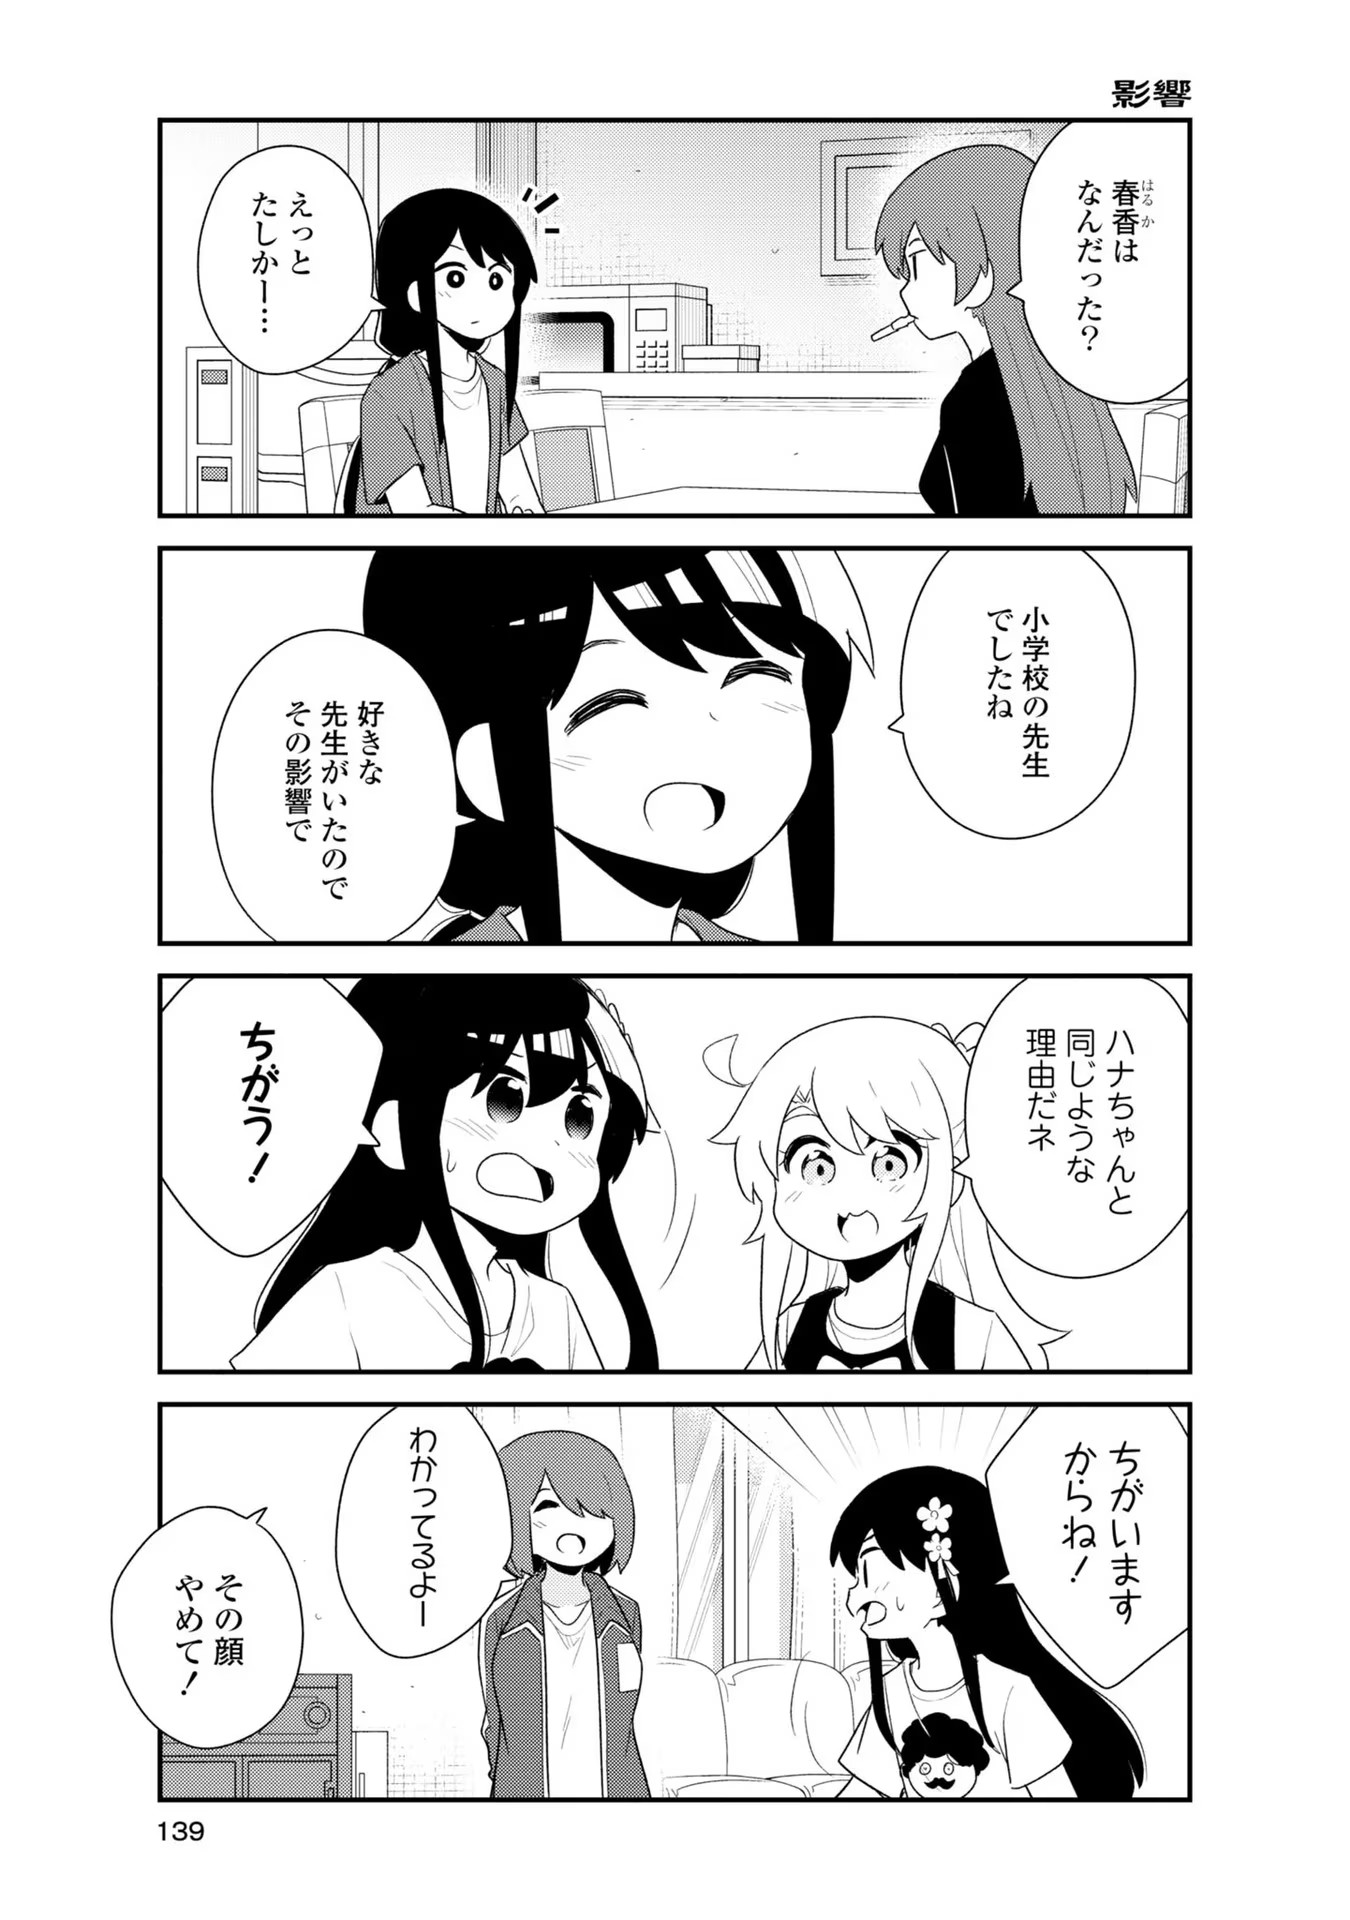 Watashi ni Tenshi ga Maiorita! - Chapter 93.5-1 - Page 5